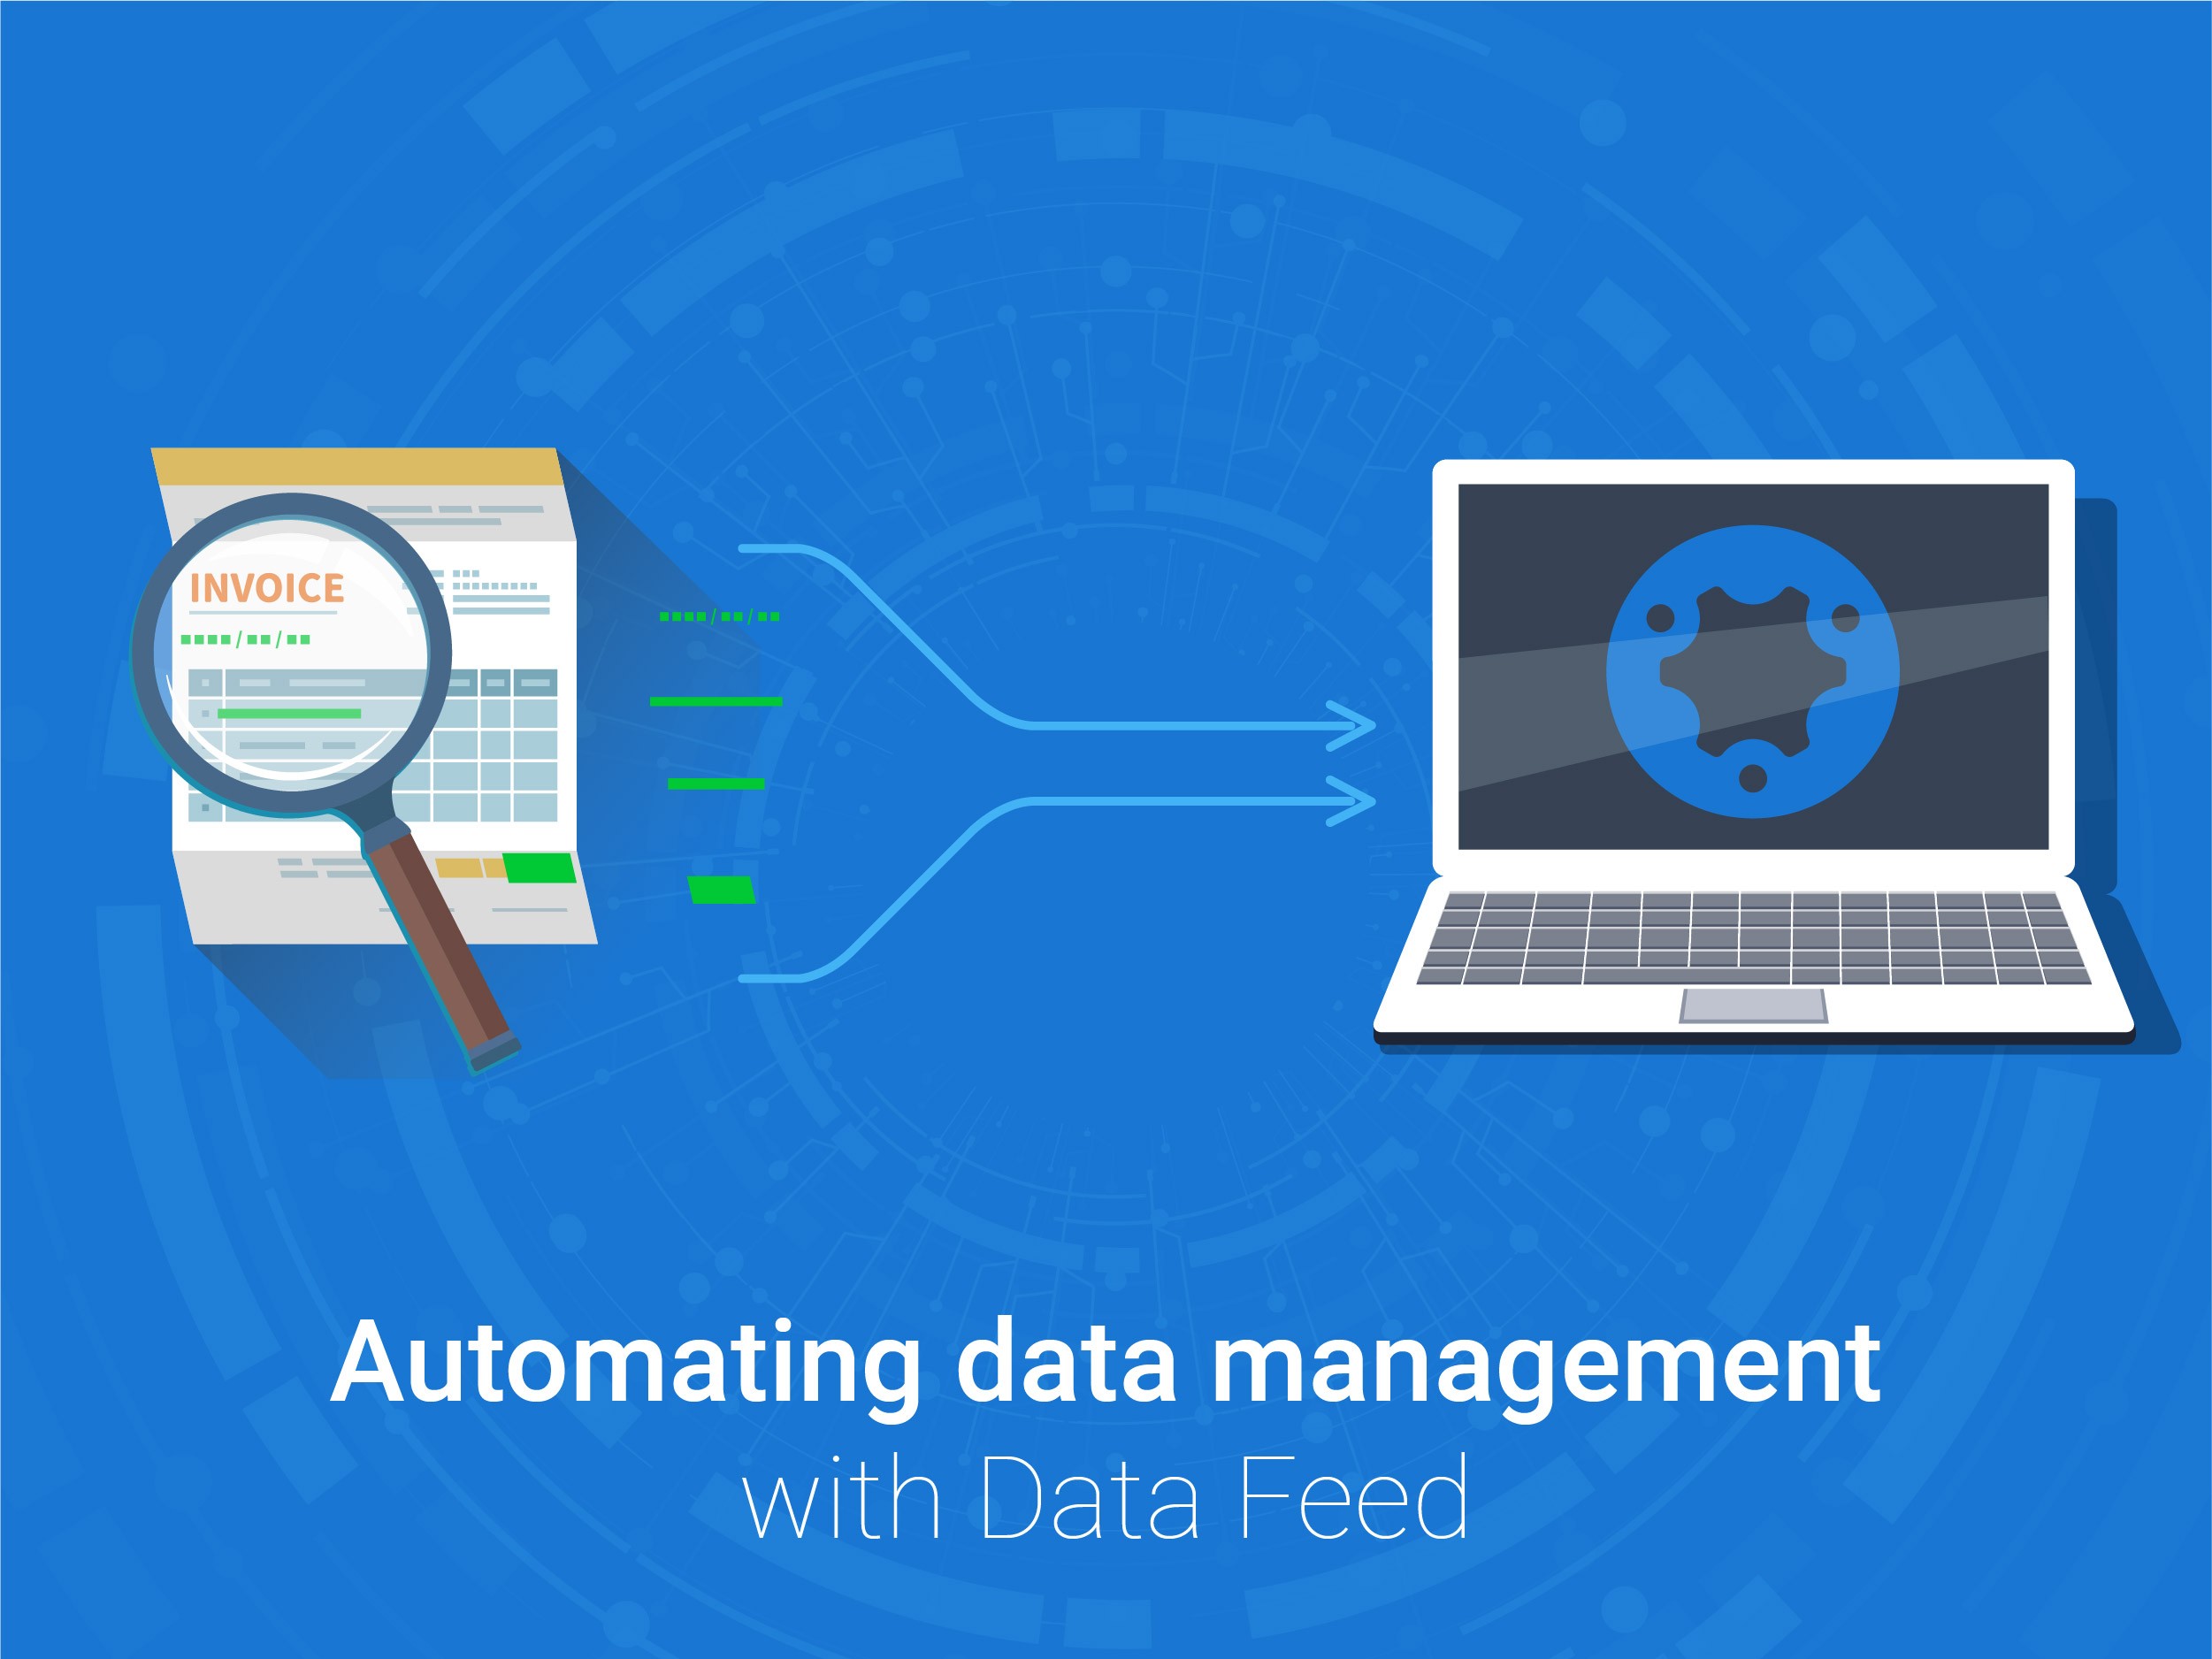 
Data feed nghĩa là nguồn cấp dữ liệu
